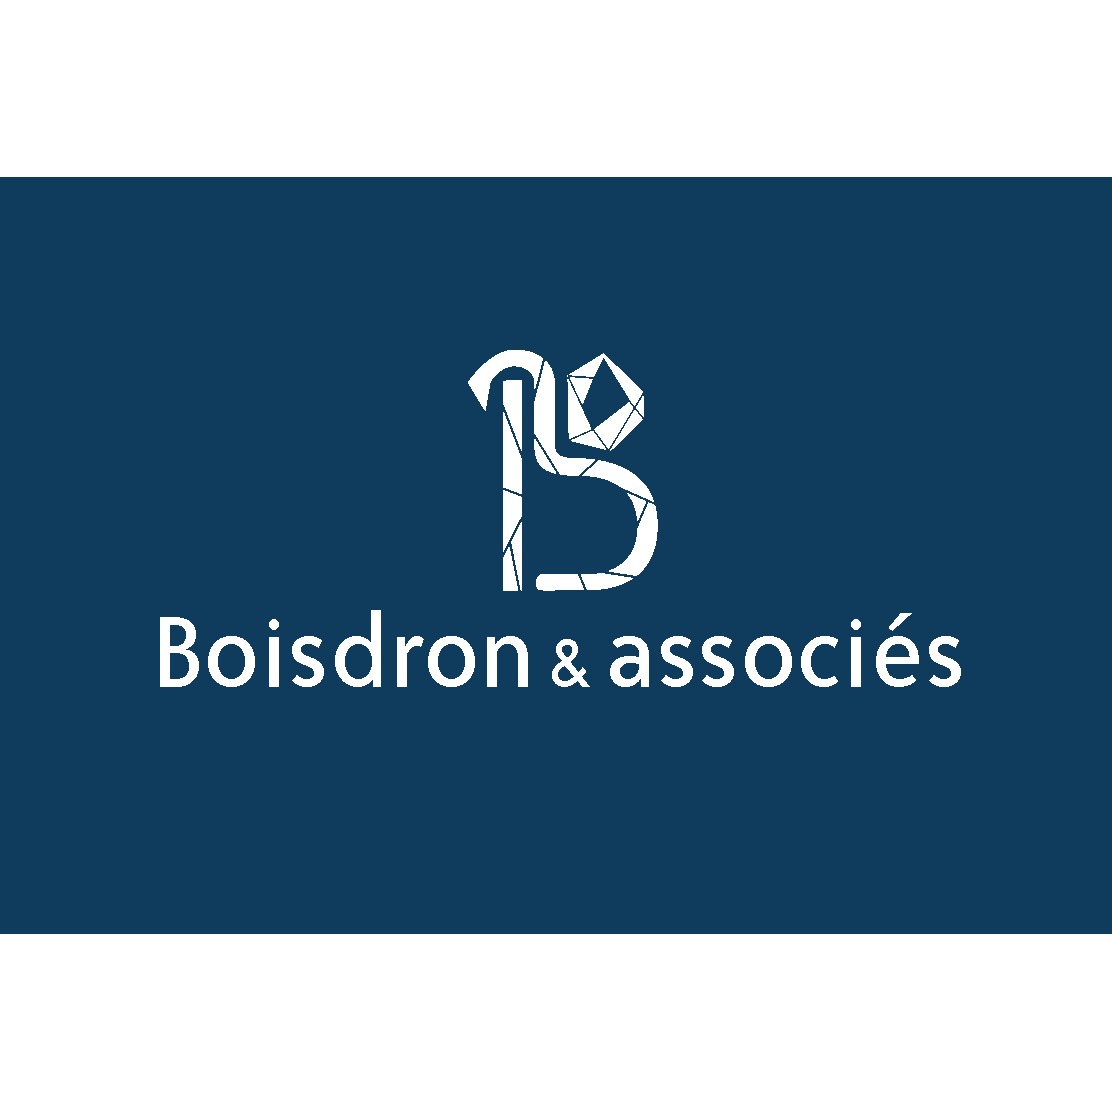 the Boisdron & Associés logo.